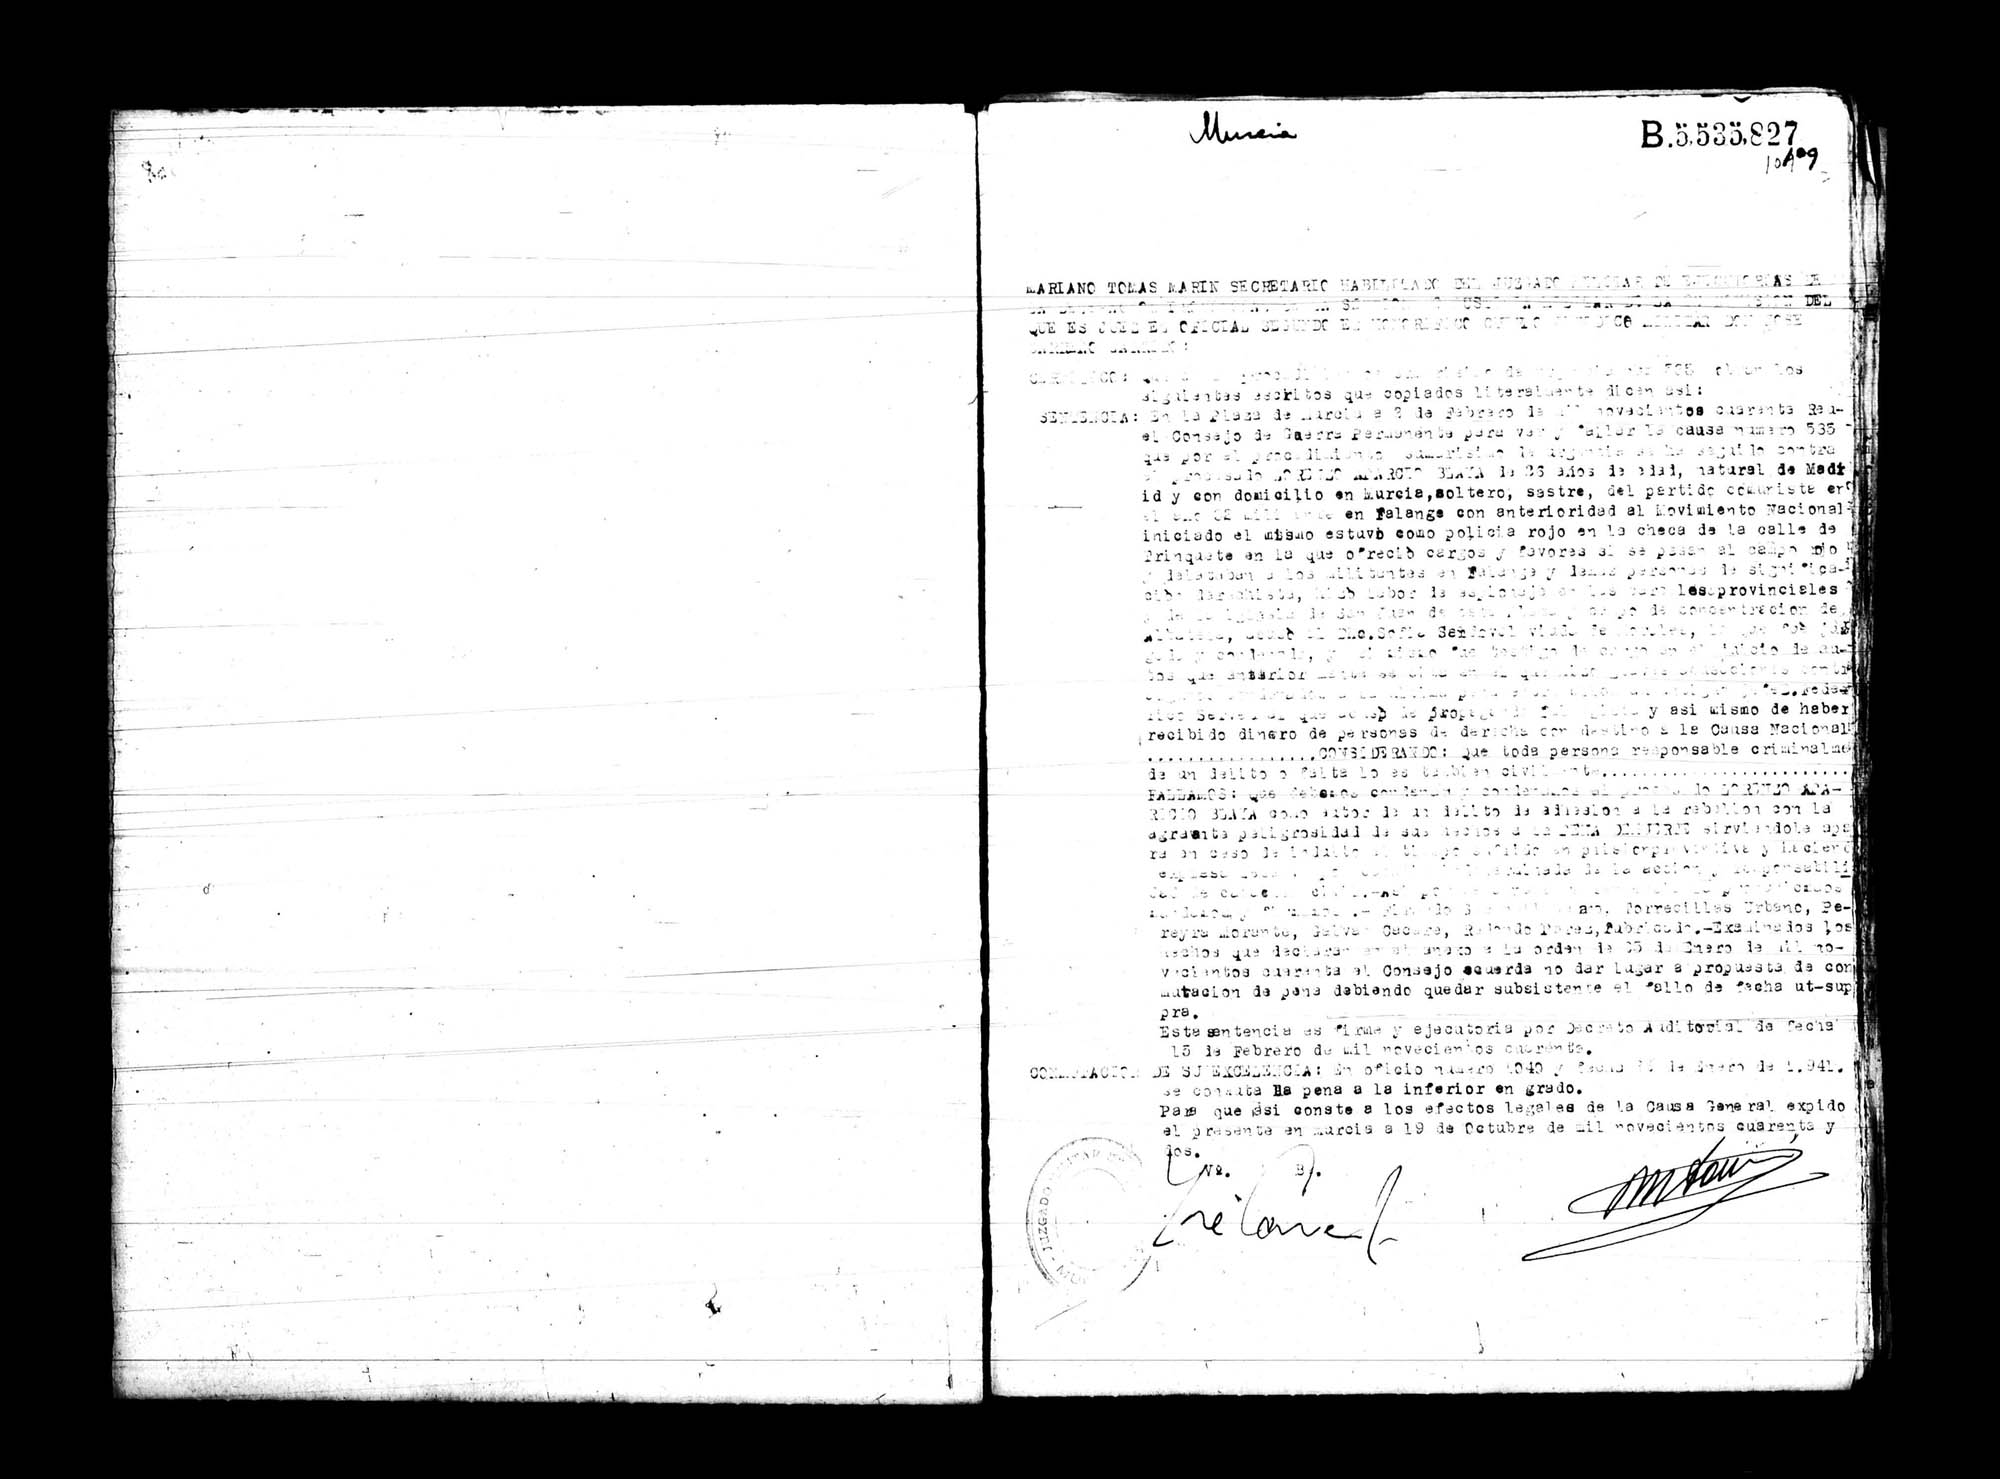 Certificado de la sentencia pronunciada contra Lorenzo Aparicio Blaya, causa 535, el 2 de febrero de 1940 en Murcia.